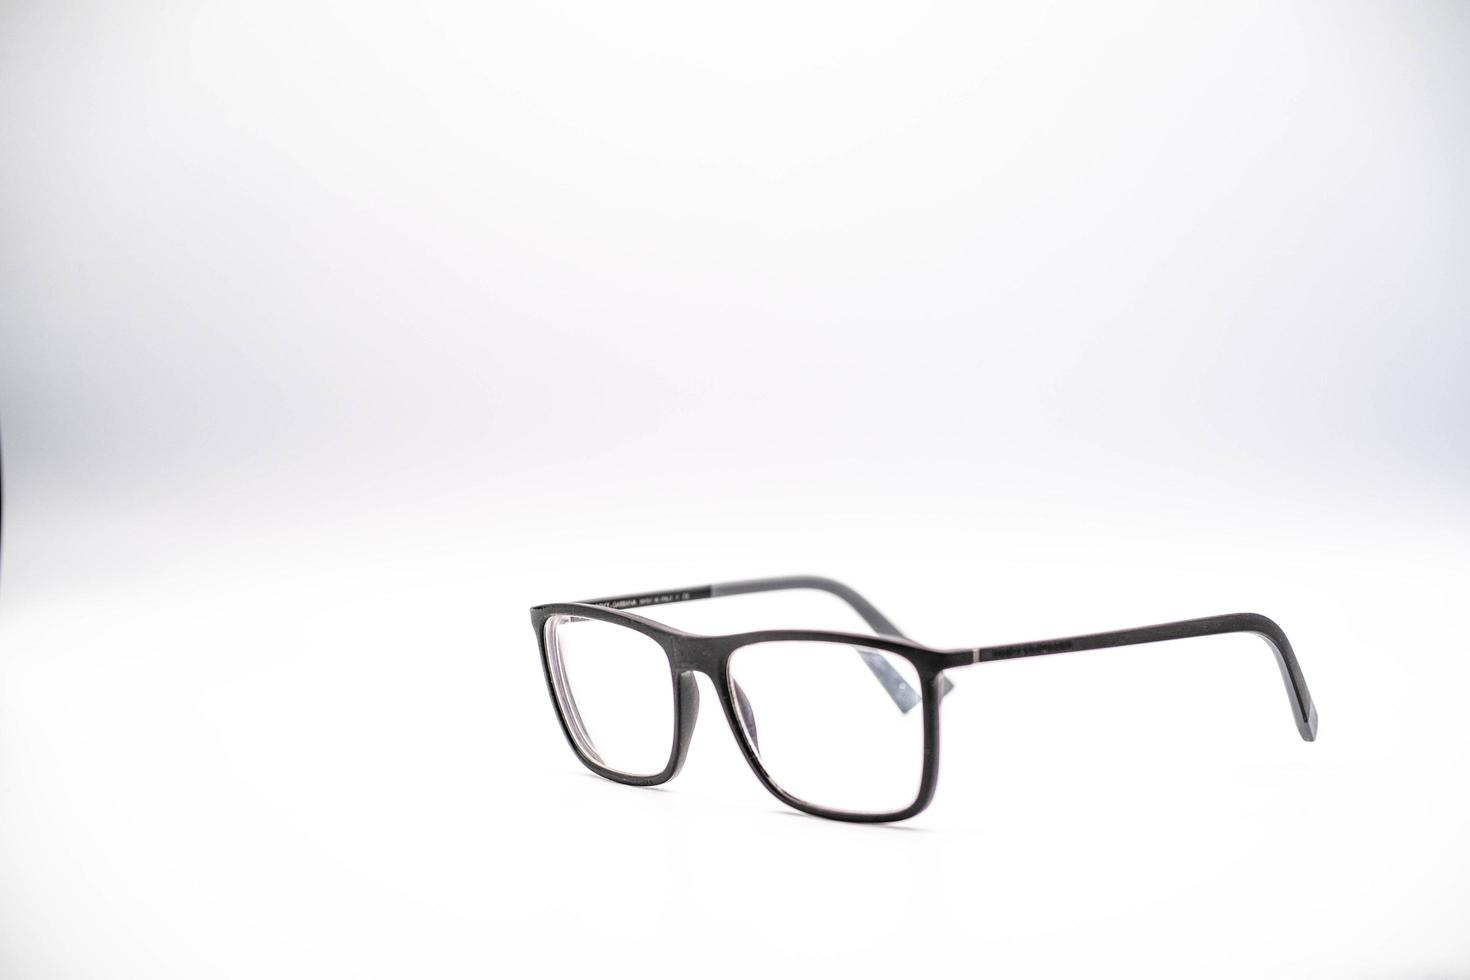 svart glasögon med en tjock fälg fotograferad mot en vit bakgrund, under en Foto skjuta i januari 2023